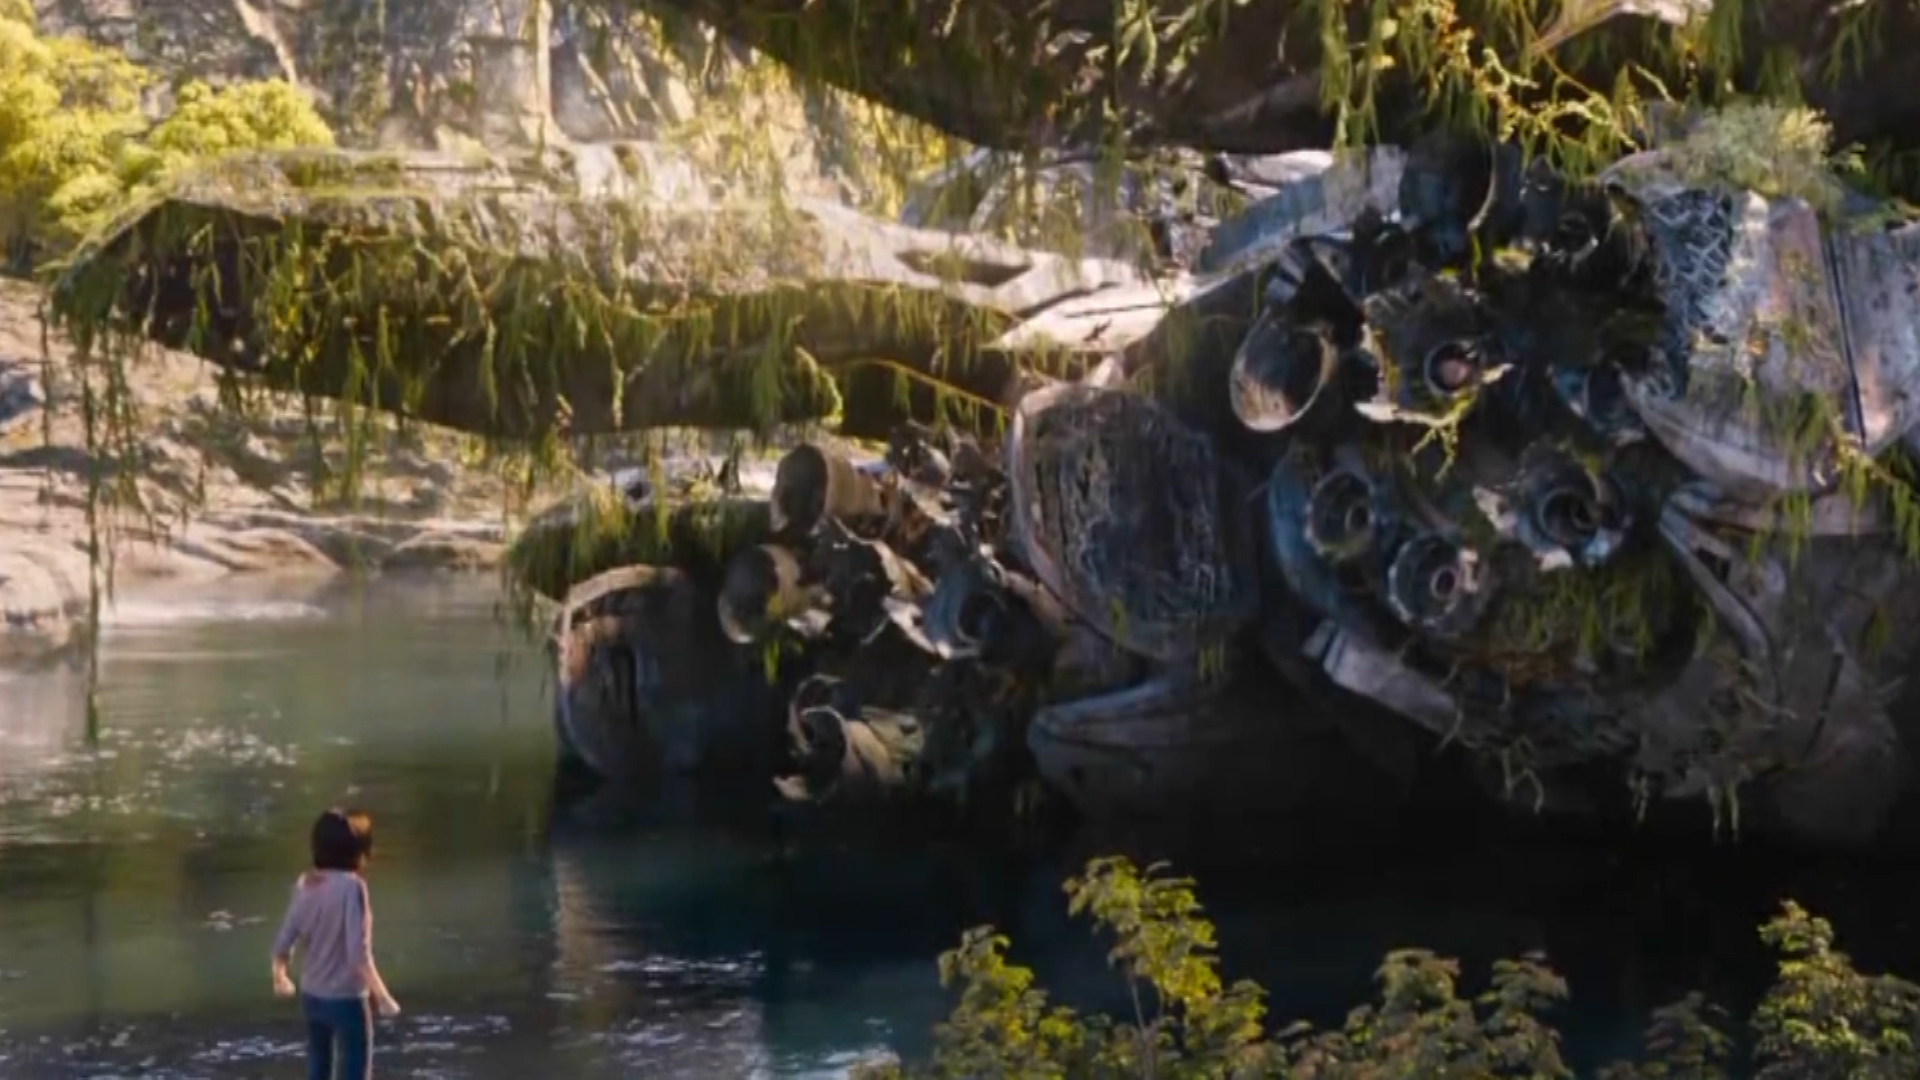 Siêu phẩm hành động của đạo diễn Avatar tung trailer hoành tráng